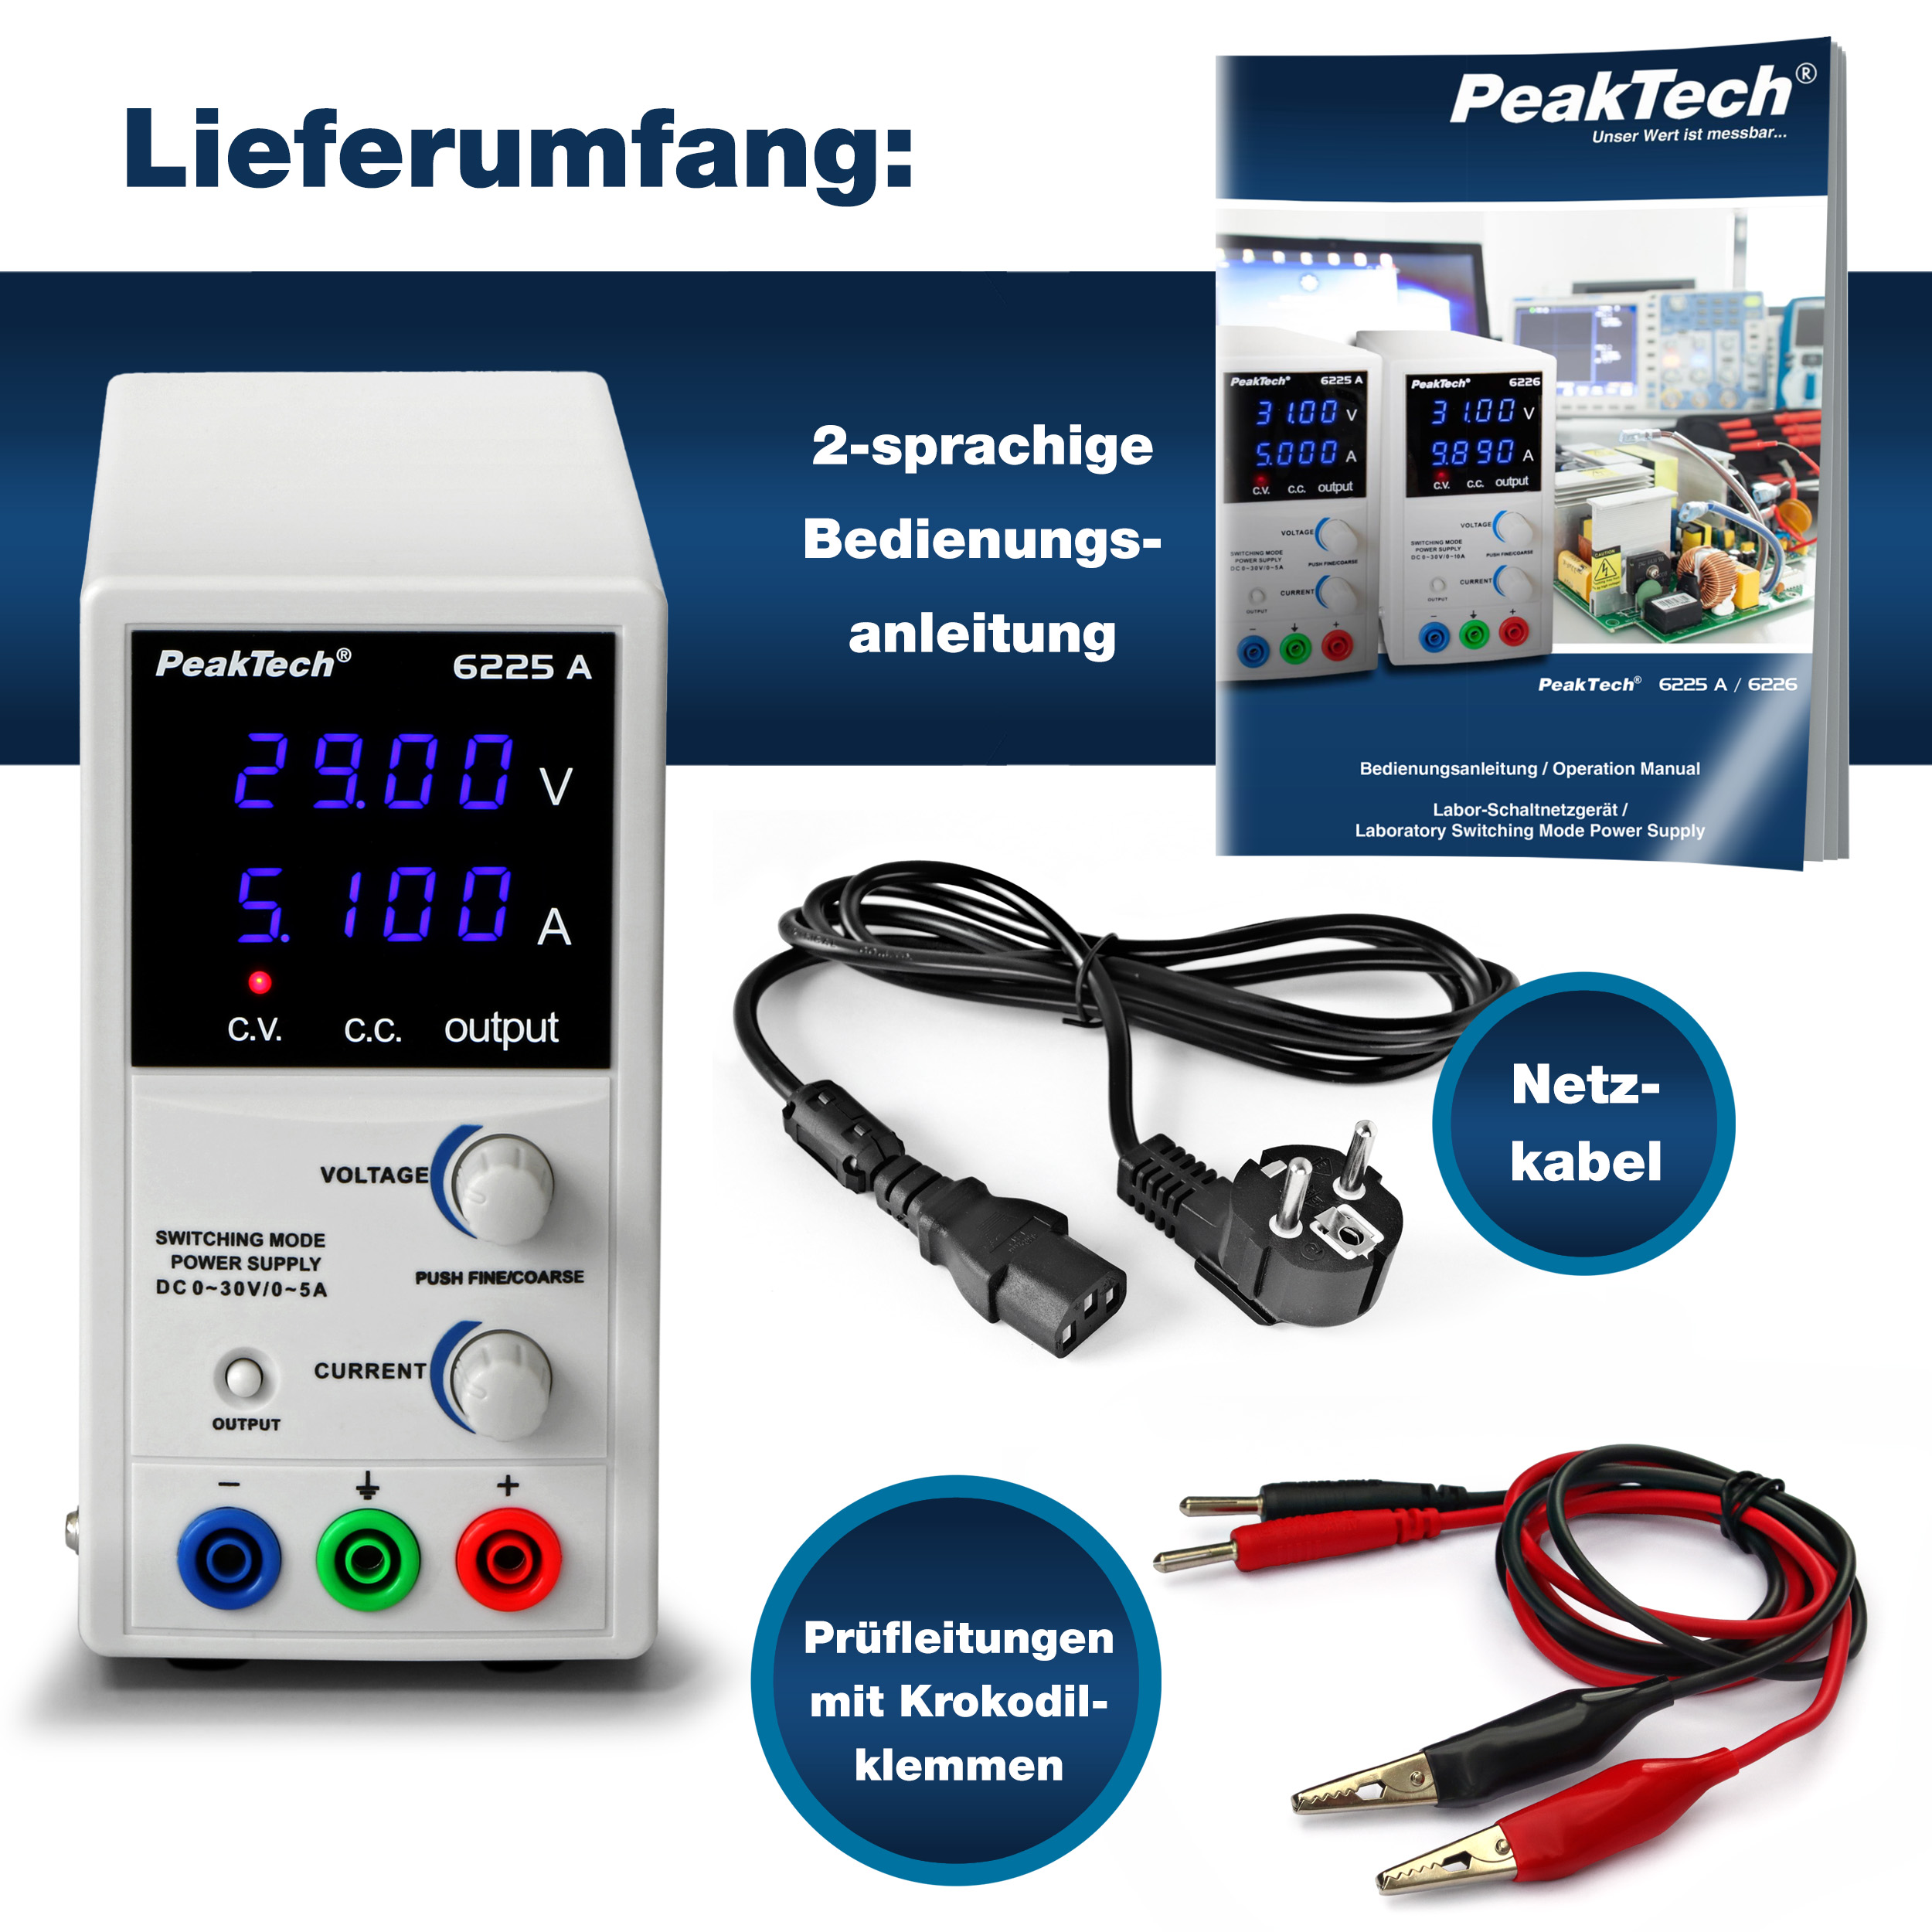 «PeakTech® P 6225 A» Labor-Schaltnetzteil DC 0 - 30 V/0 - 5 A